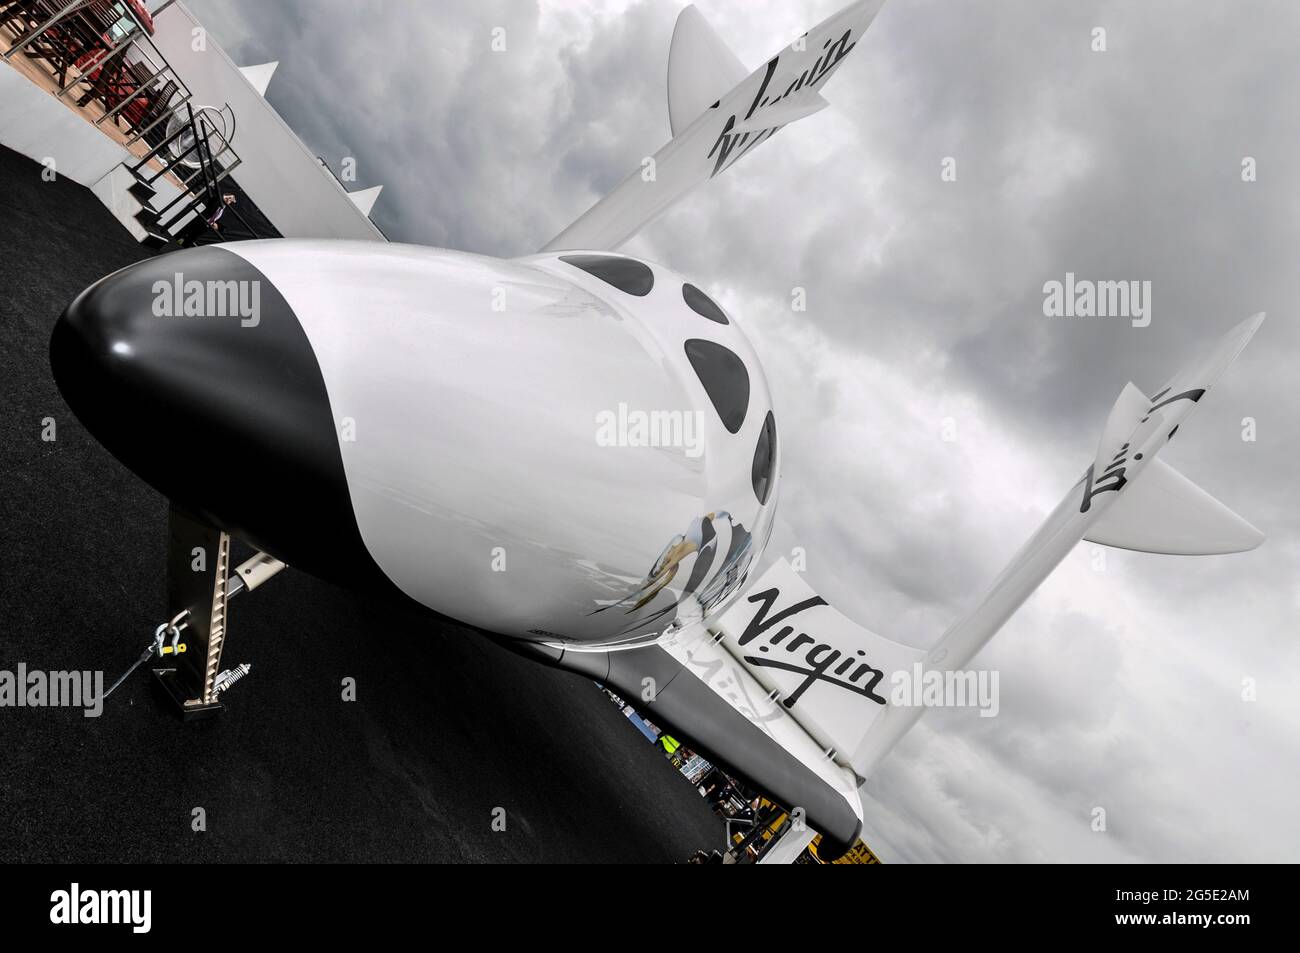 VSS Enterprise, erste SpaceShipTwo (SS2) Raumflugmaschine, gebaut von Scaled Composites für Virgin Galactic. Ausstellung auf der Farnborough International Airshow 2012 Stockfoto